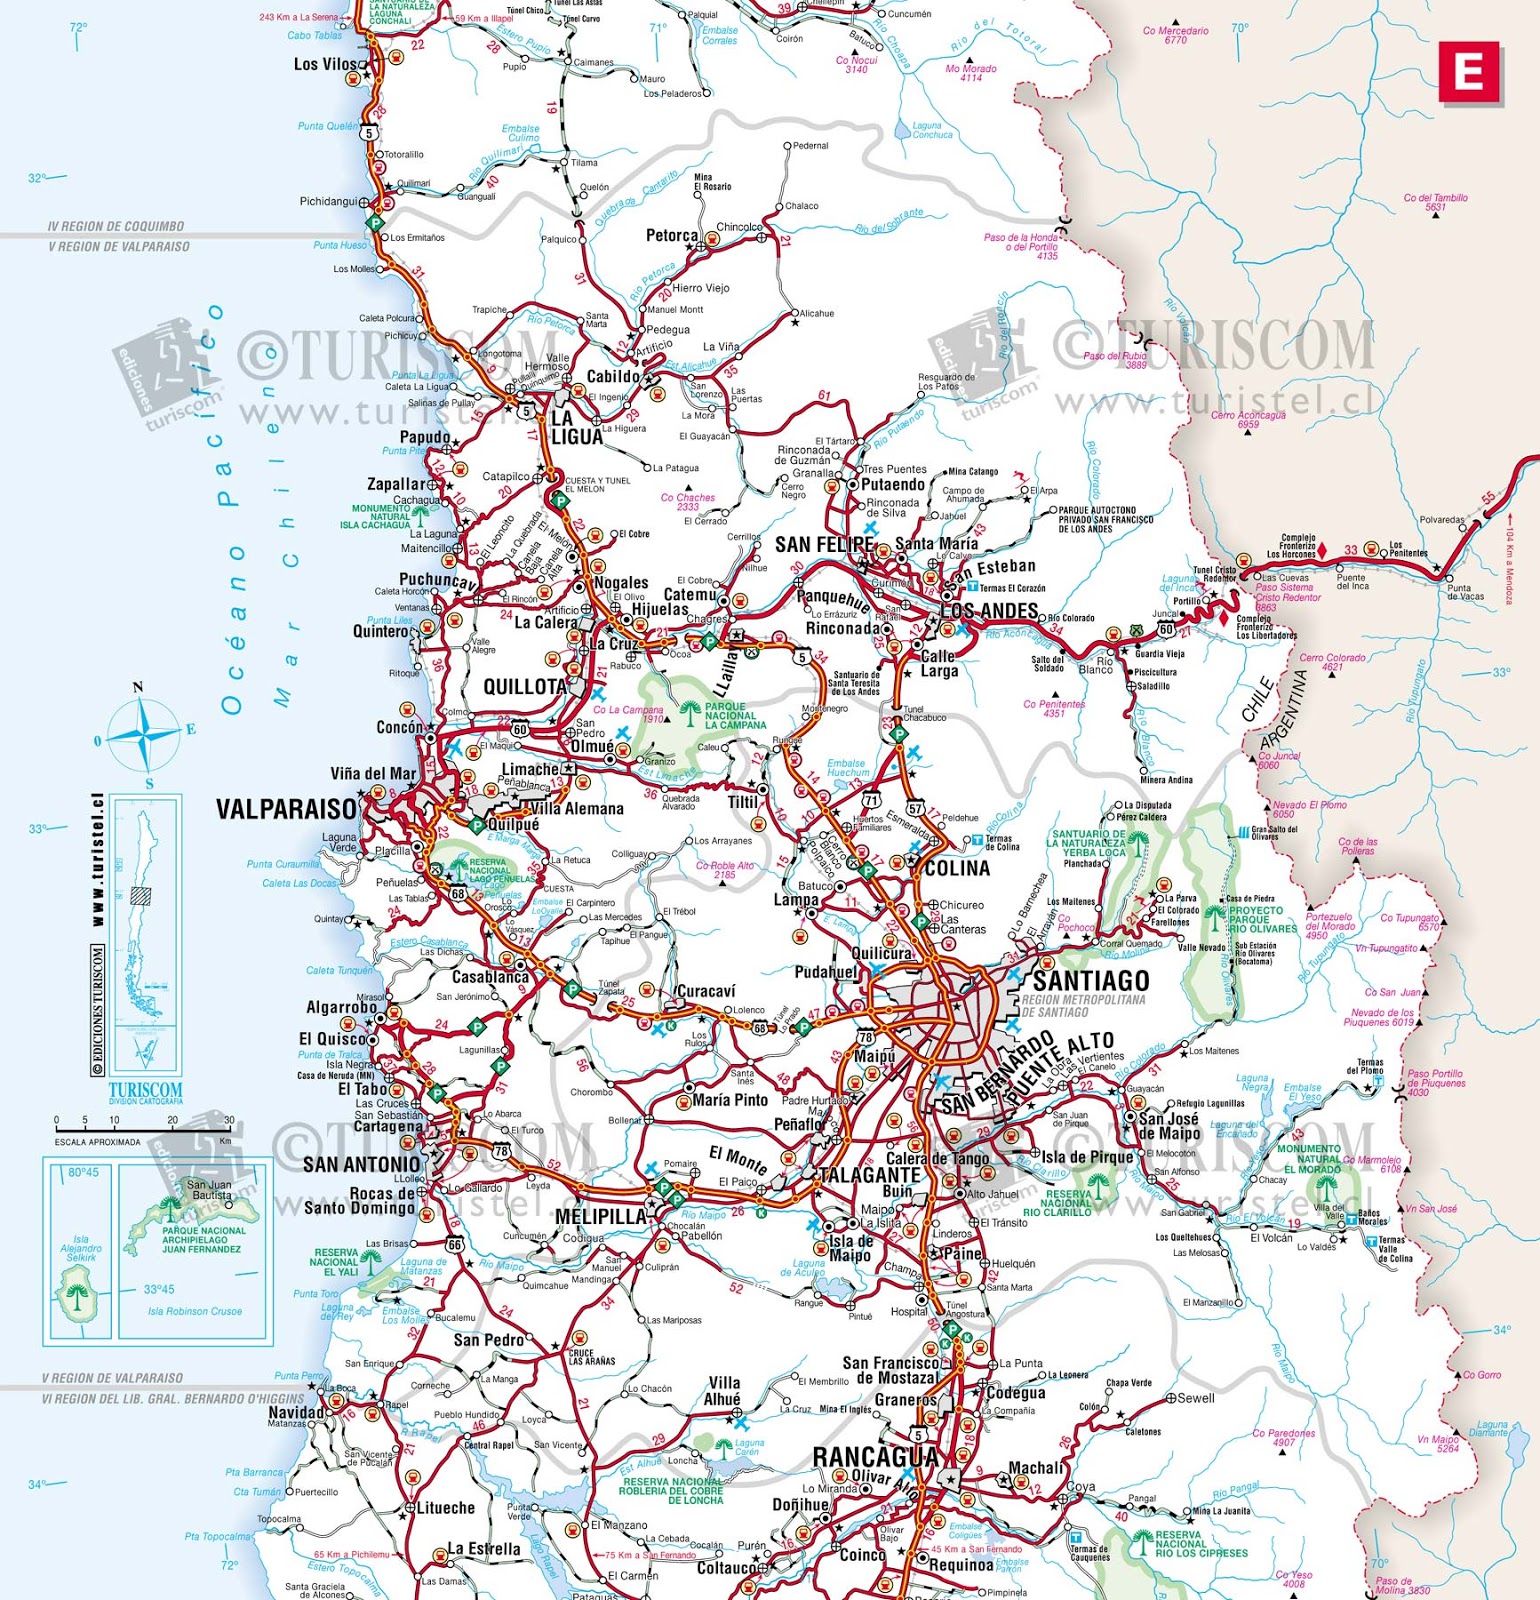 Mapa do Chile - Região 5 - Valparaiso | MapasBlog